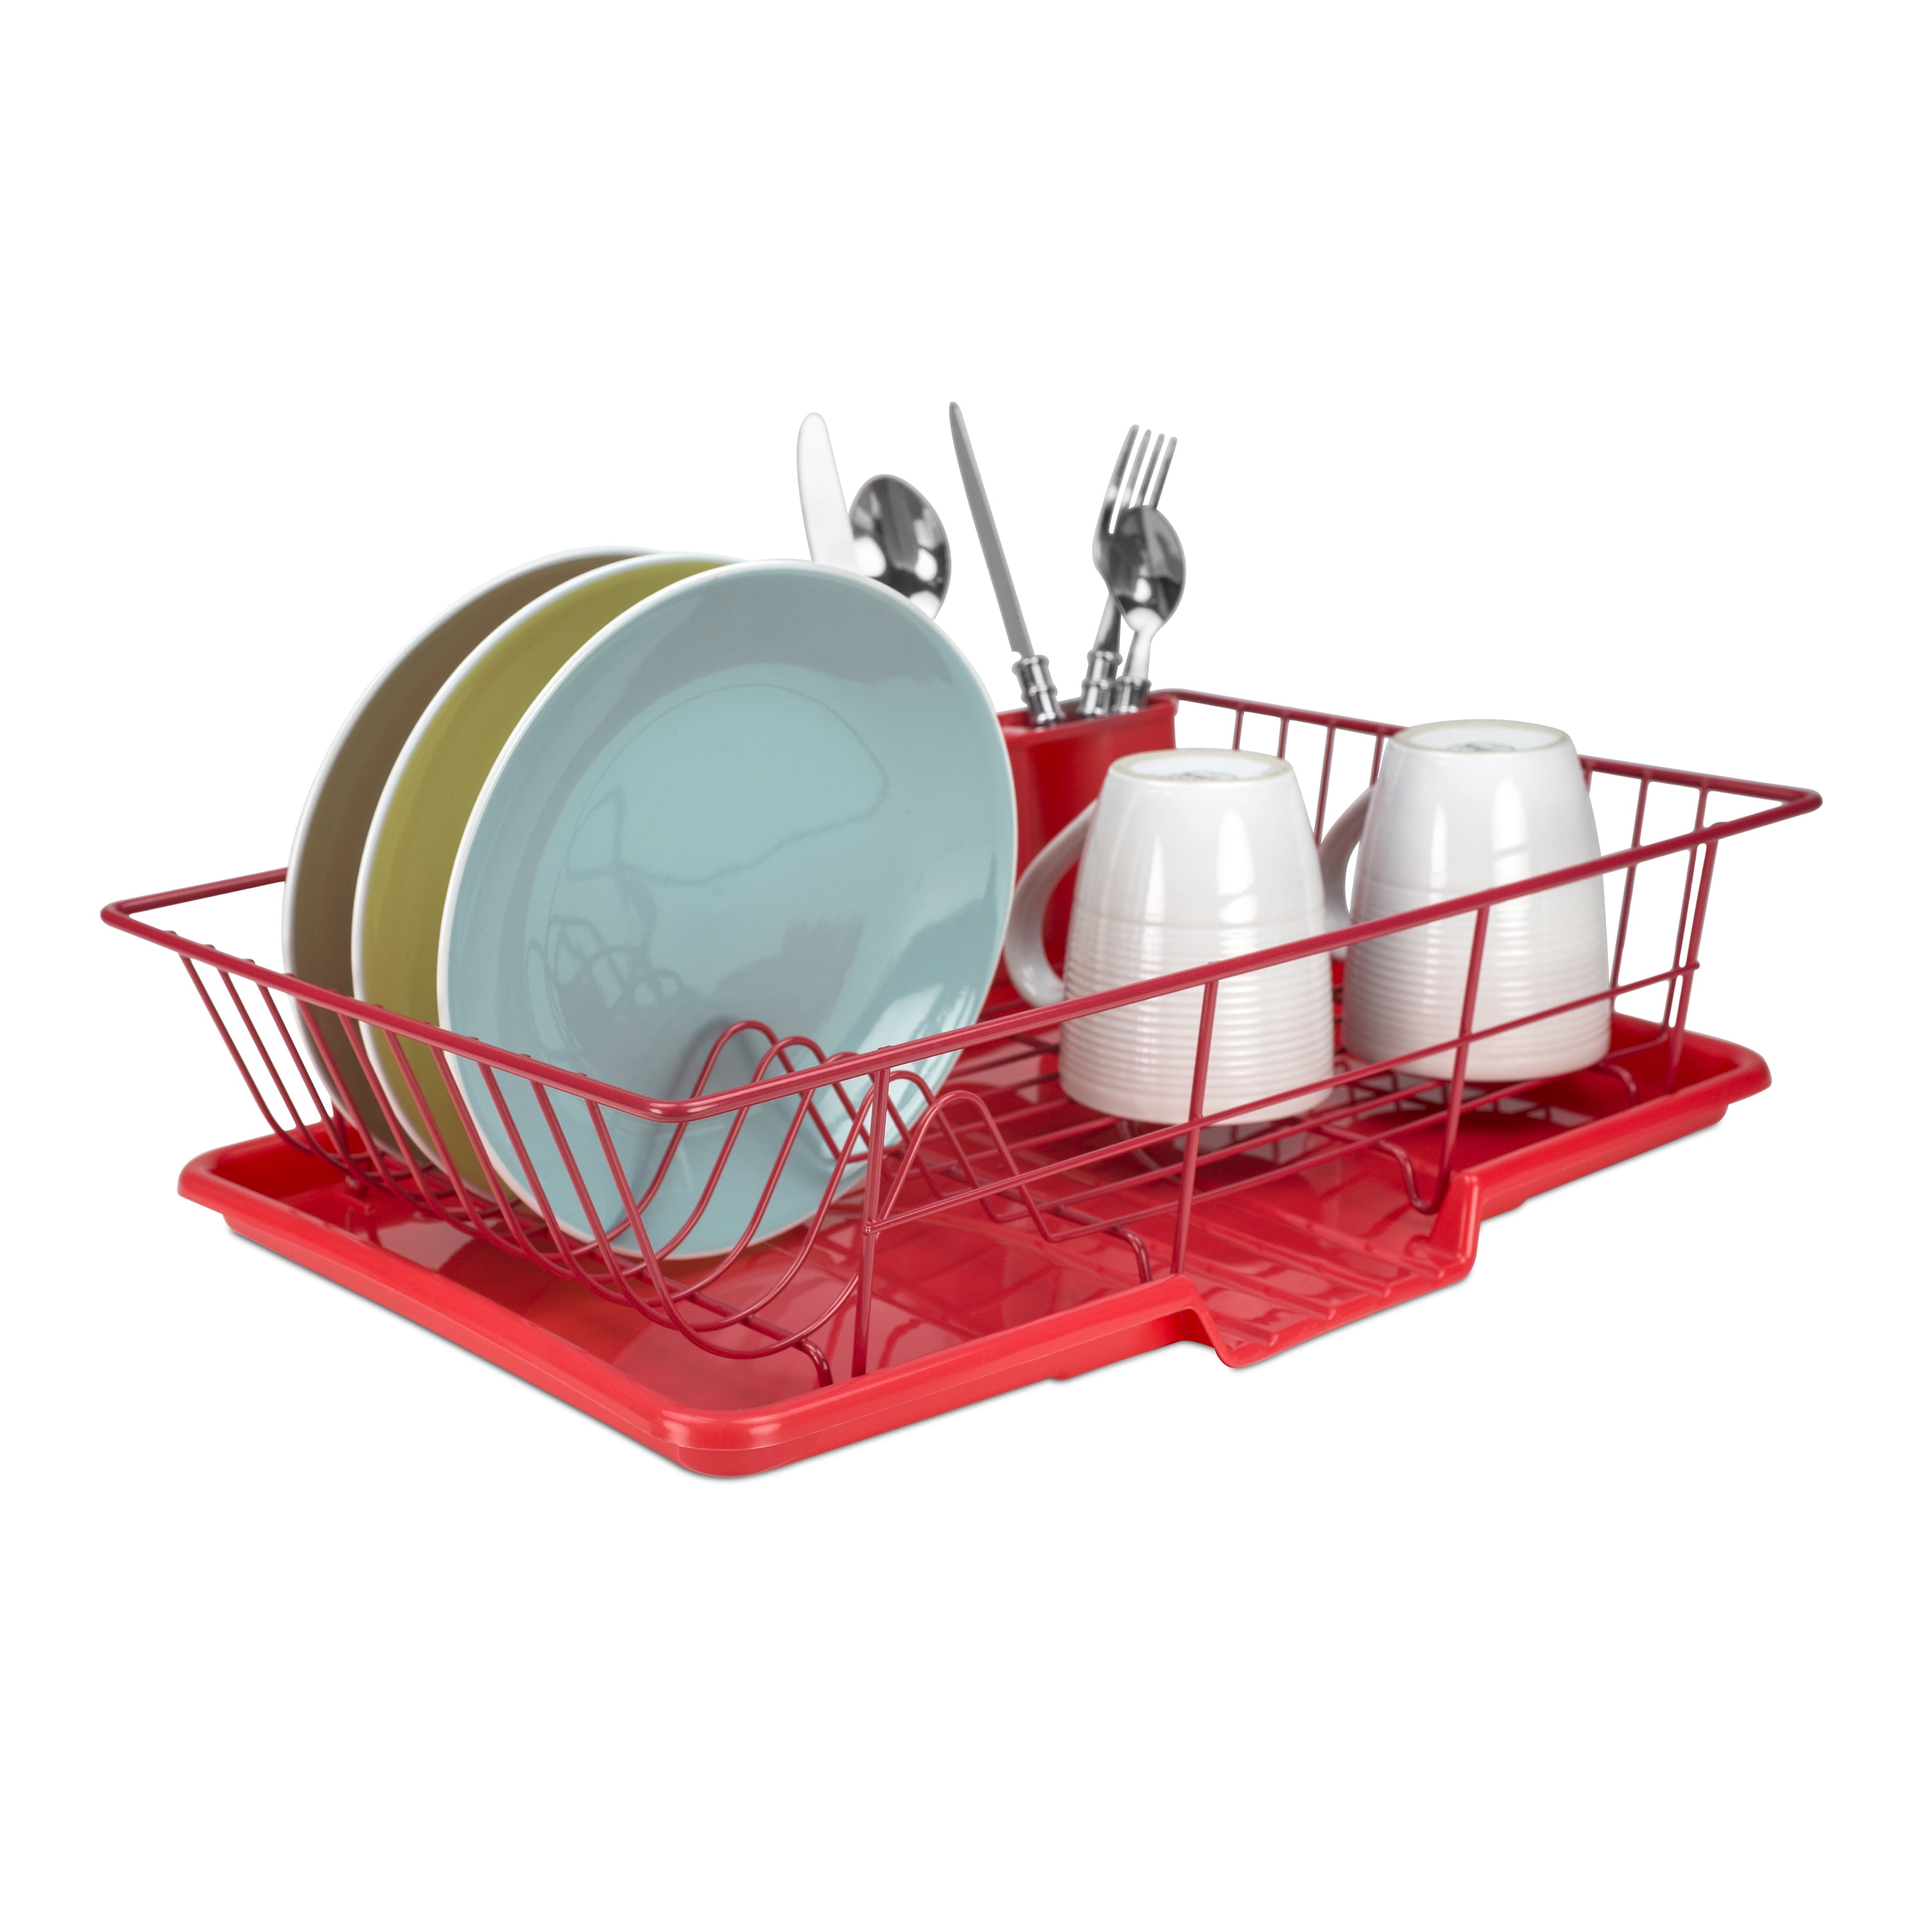  Warmfill Dish Drying Rack, 3 Tier Dish Rack Rustproof